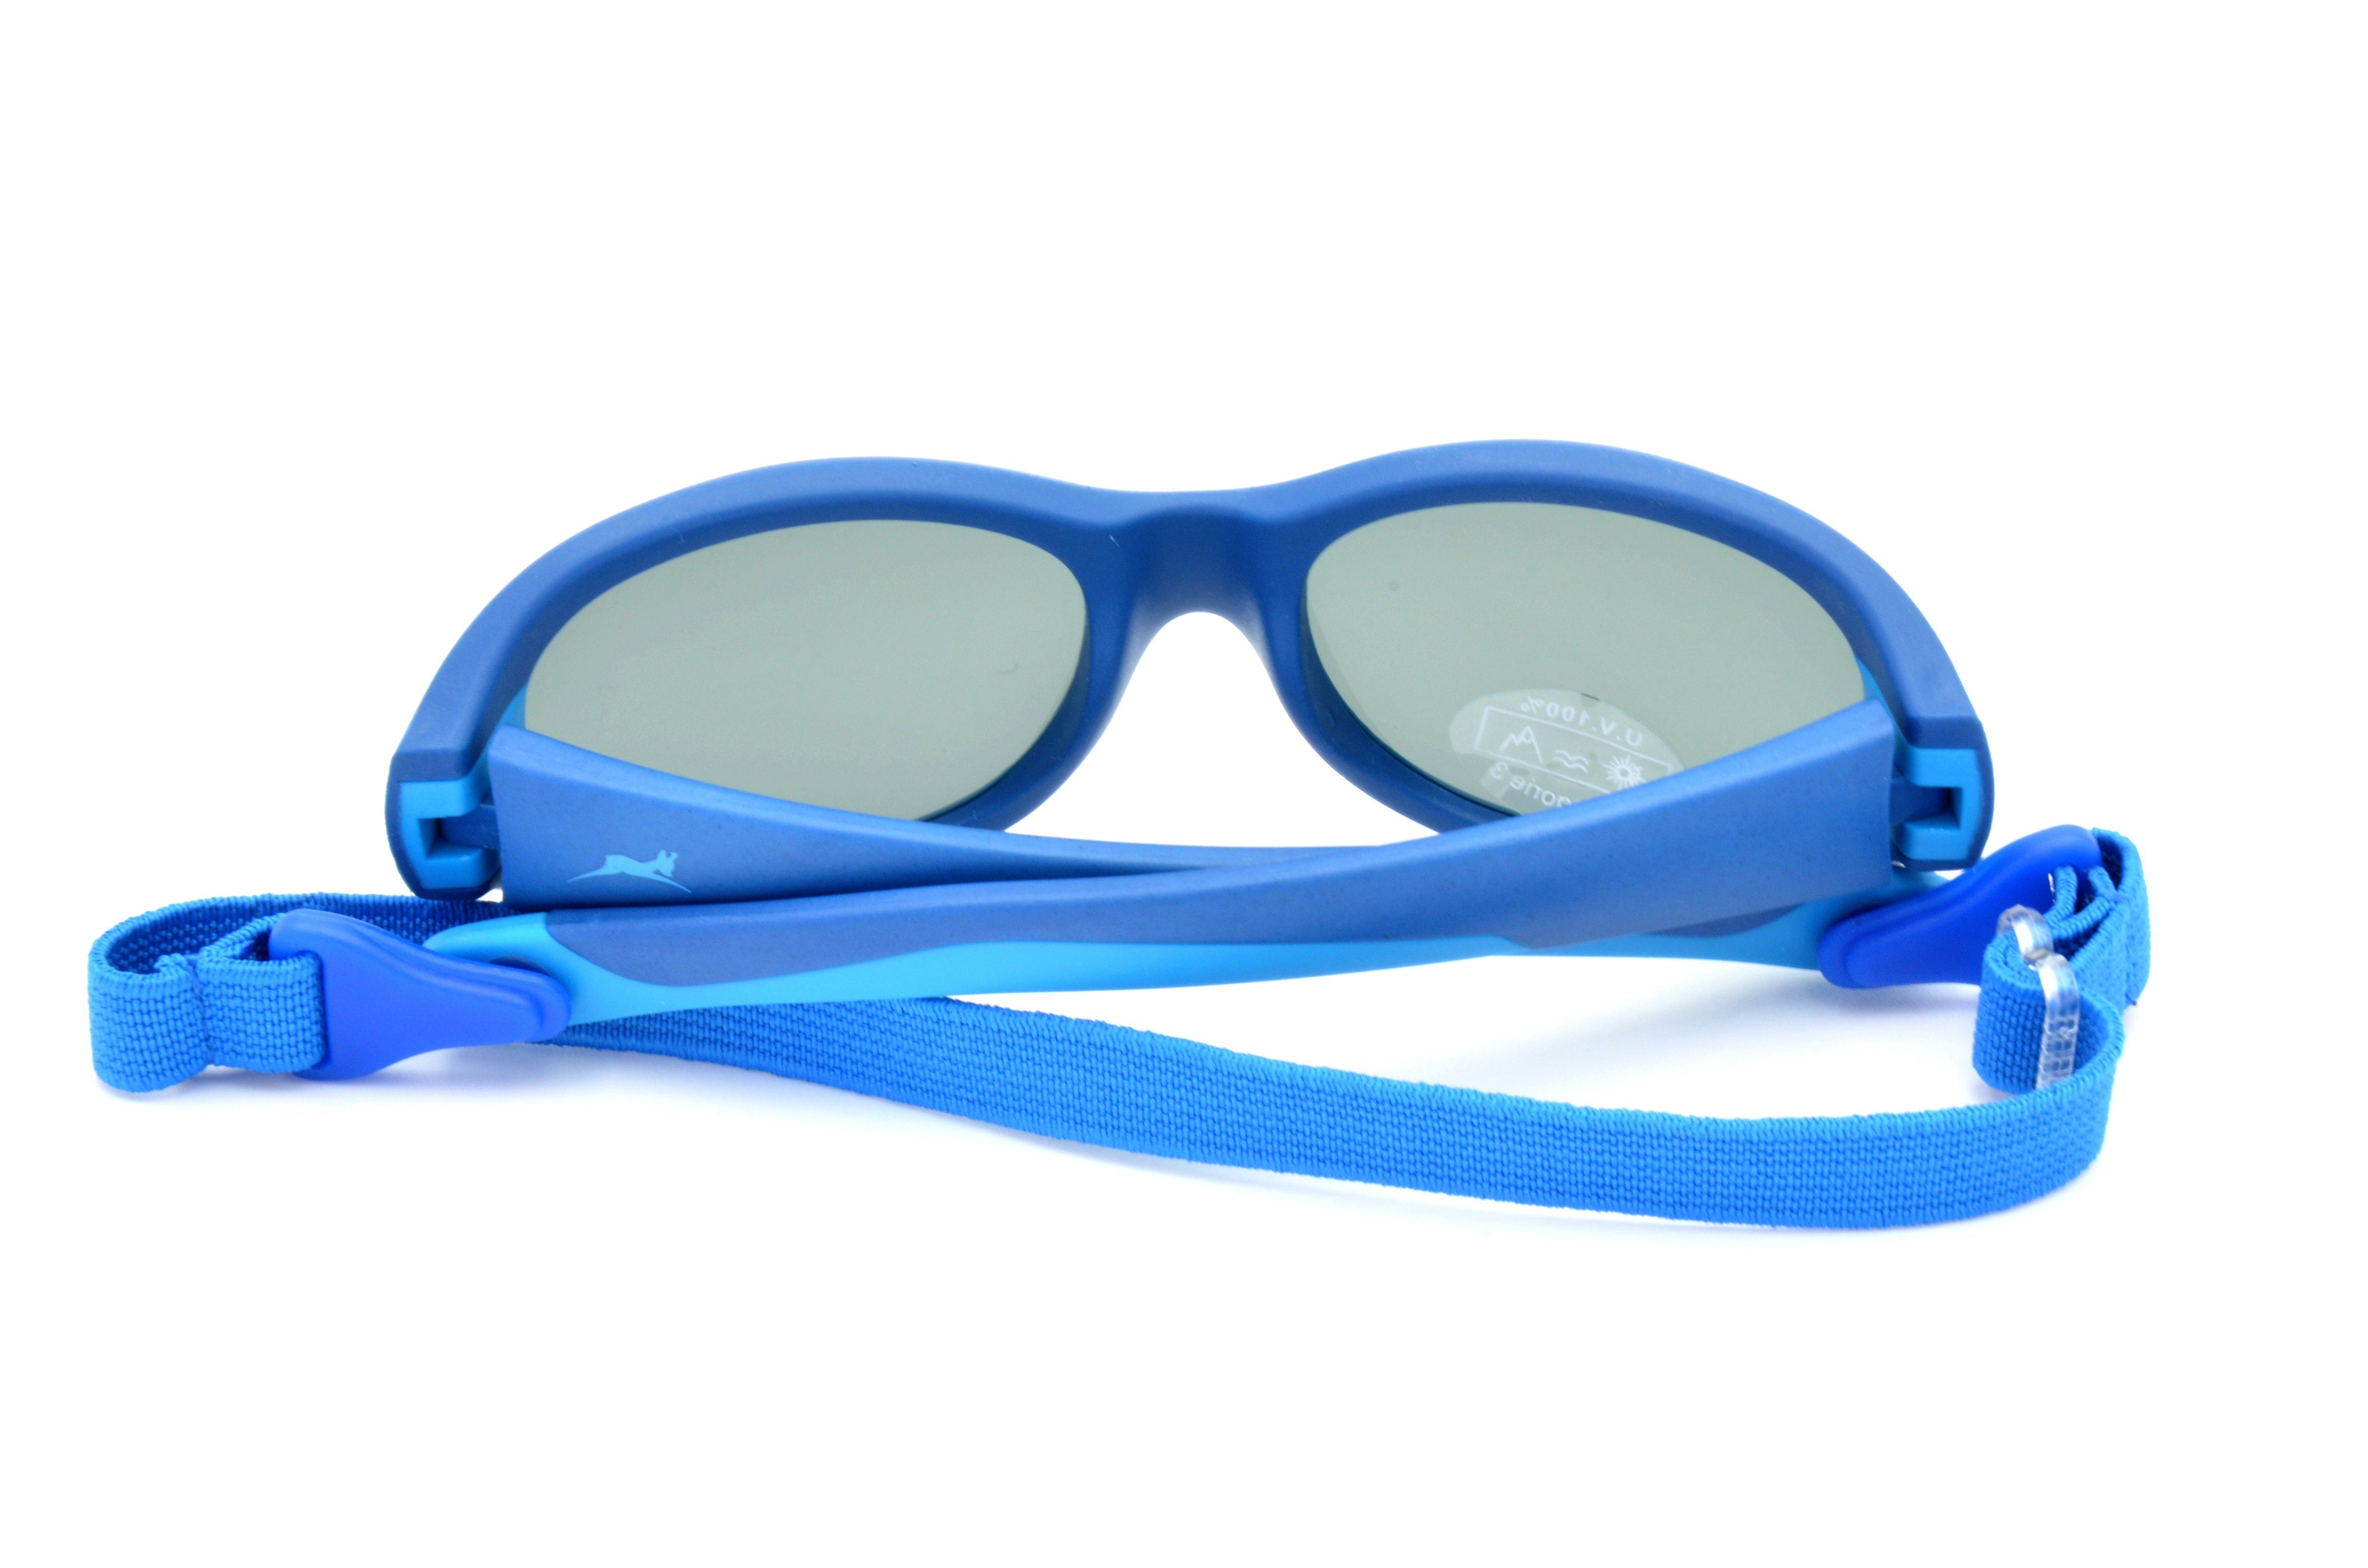 Gamswild Sonnenbrille WK5121 GAMSKIDS Kinderbrille Unisex, Jahre kids Kleinkindbrille Mädchen rosa Jungen 3-6 grün, blau